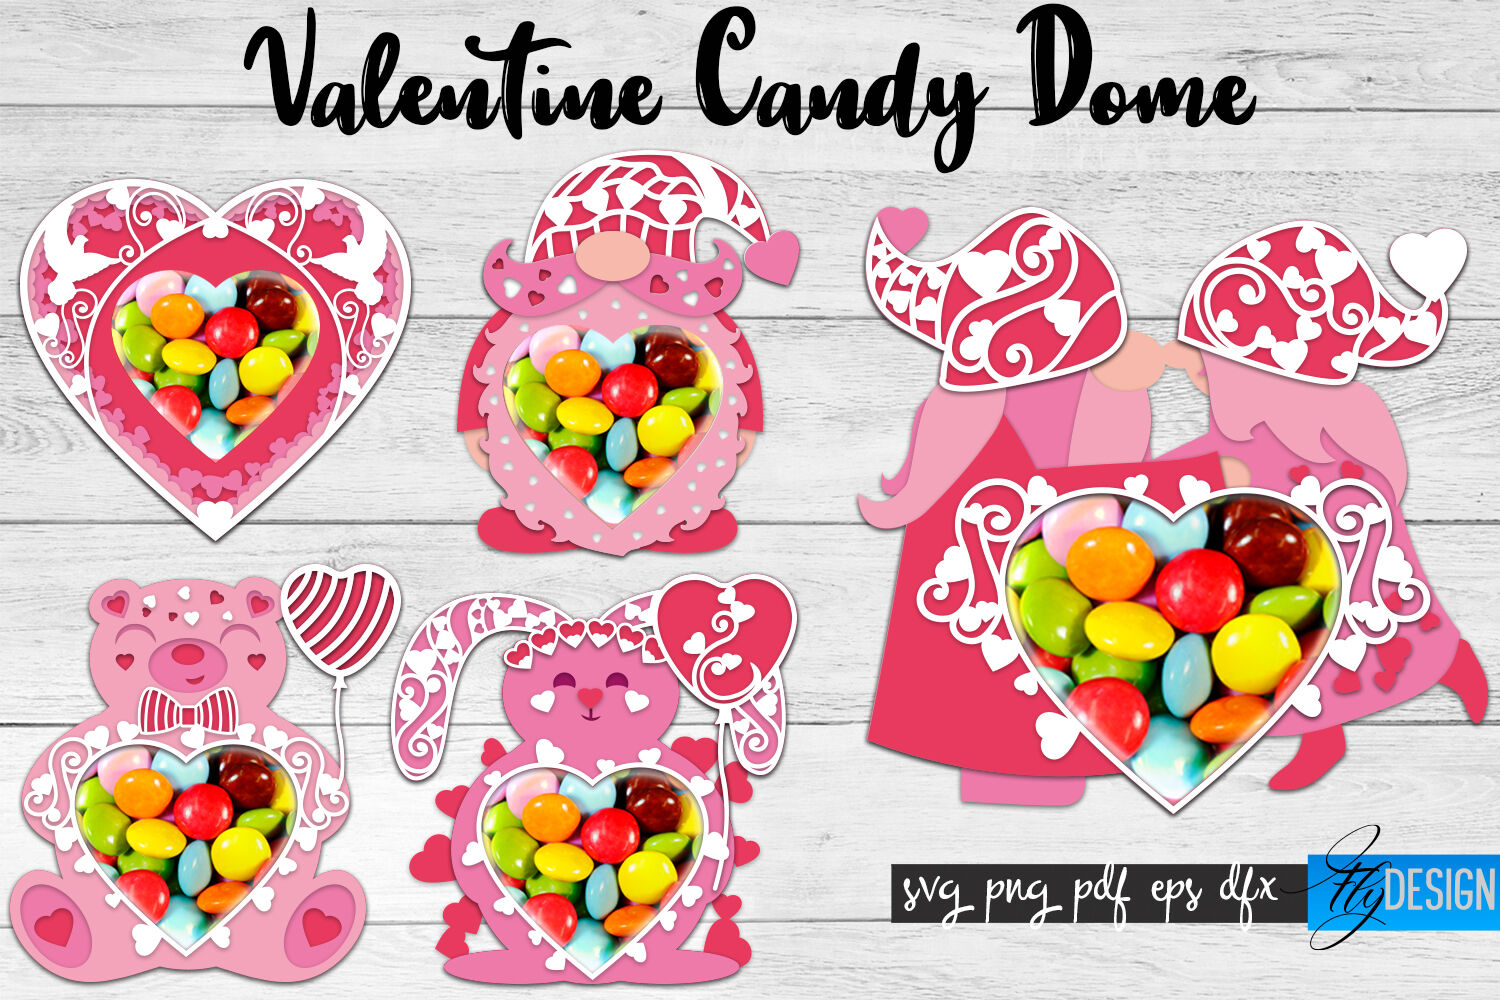 Valentine Candy Dome SVG | Candy Holders SVG | Treat Box SVG v.2 By Fly